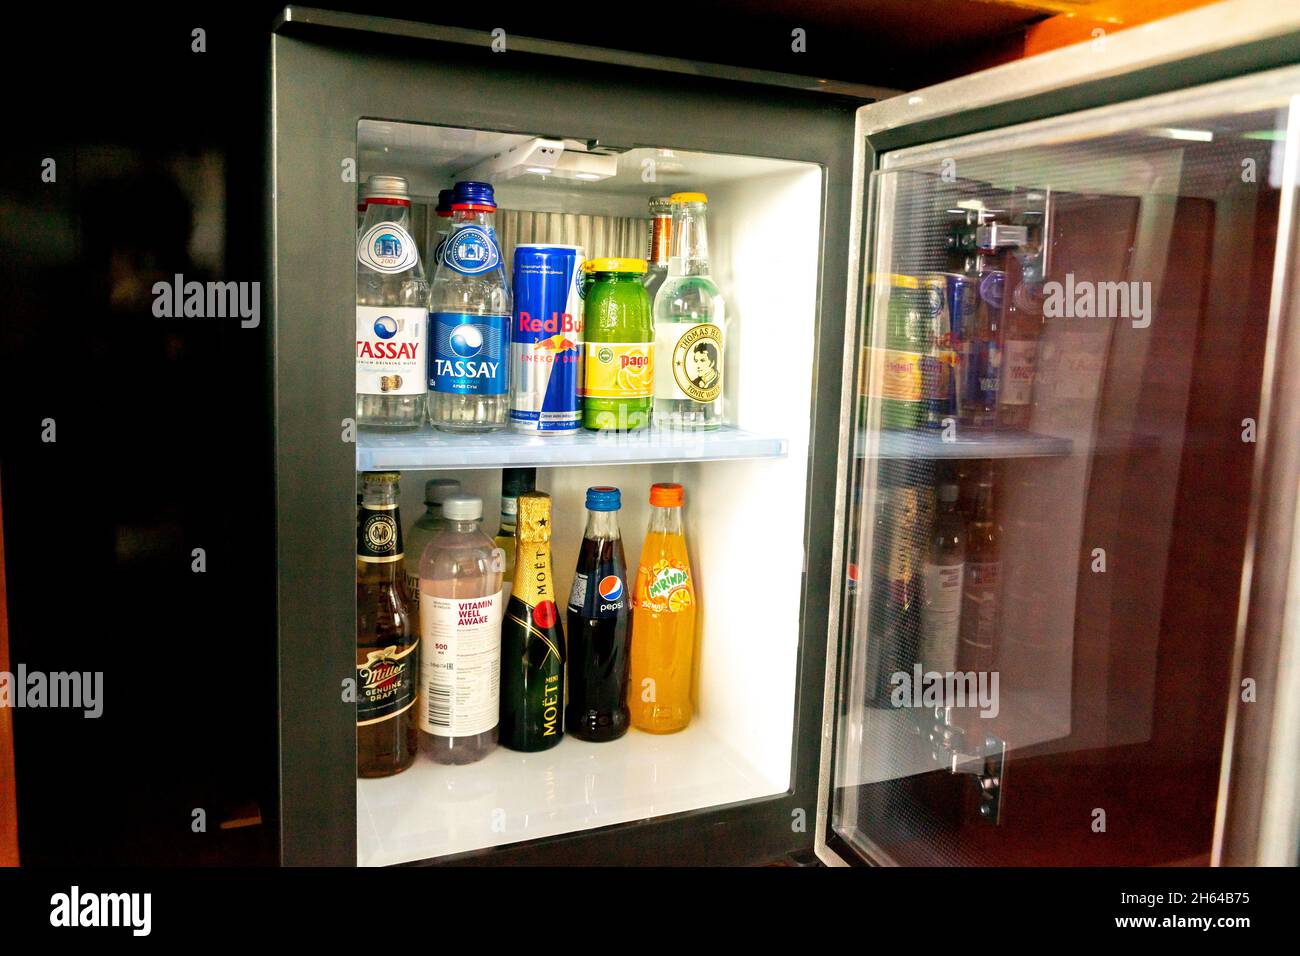 Mantenga sus bebidas favoritas frías y deliciosas con los mejores refrigeradores  mini